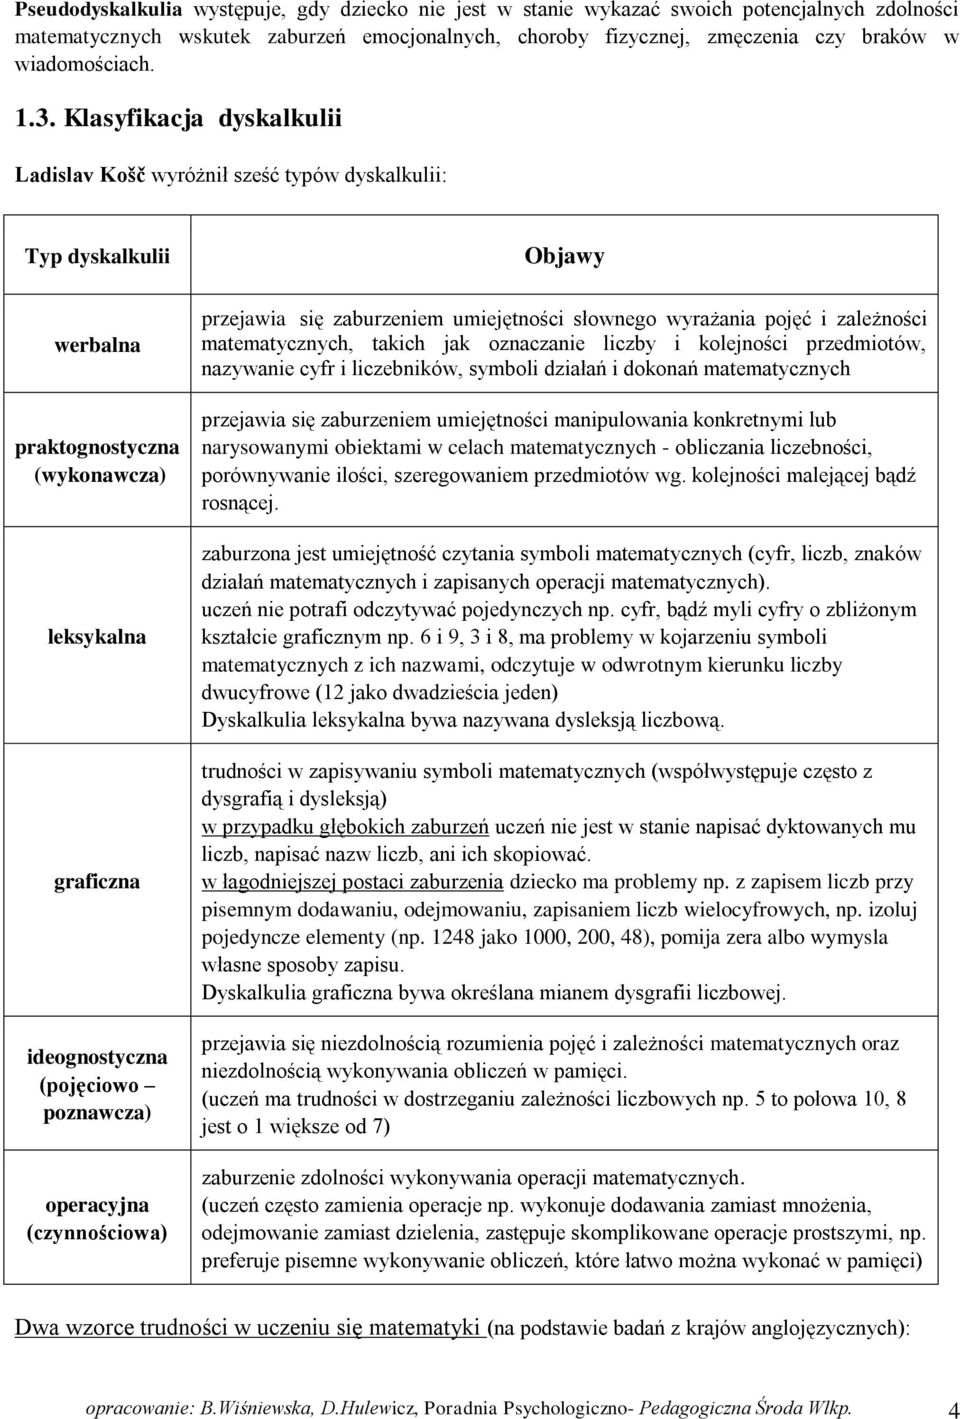 Klasyfikacja dyskalkulii Ladislav Košč wyróżnił sześć typów dyskalkulii: Typ dyskalkulii werbalna praktognostyczna (wykonawcza) leksykalna graficzna ideognostyczna (pojęciowo poznawcza) operacyjna